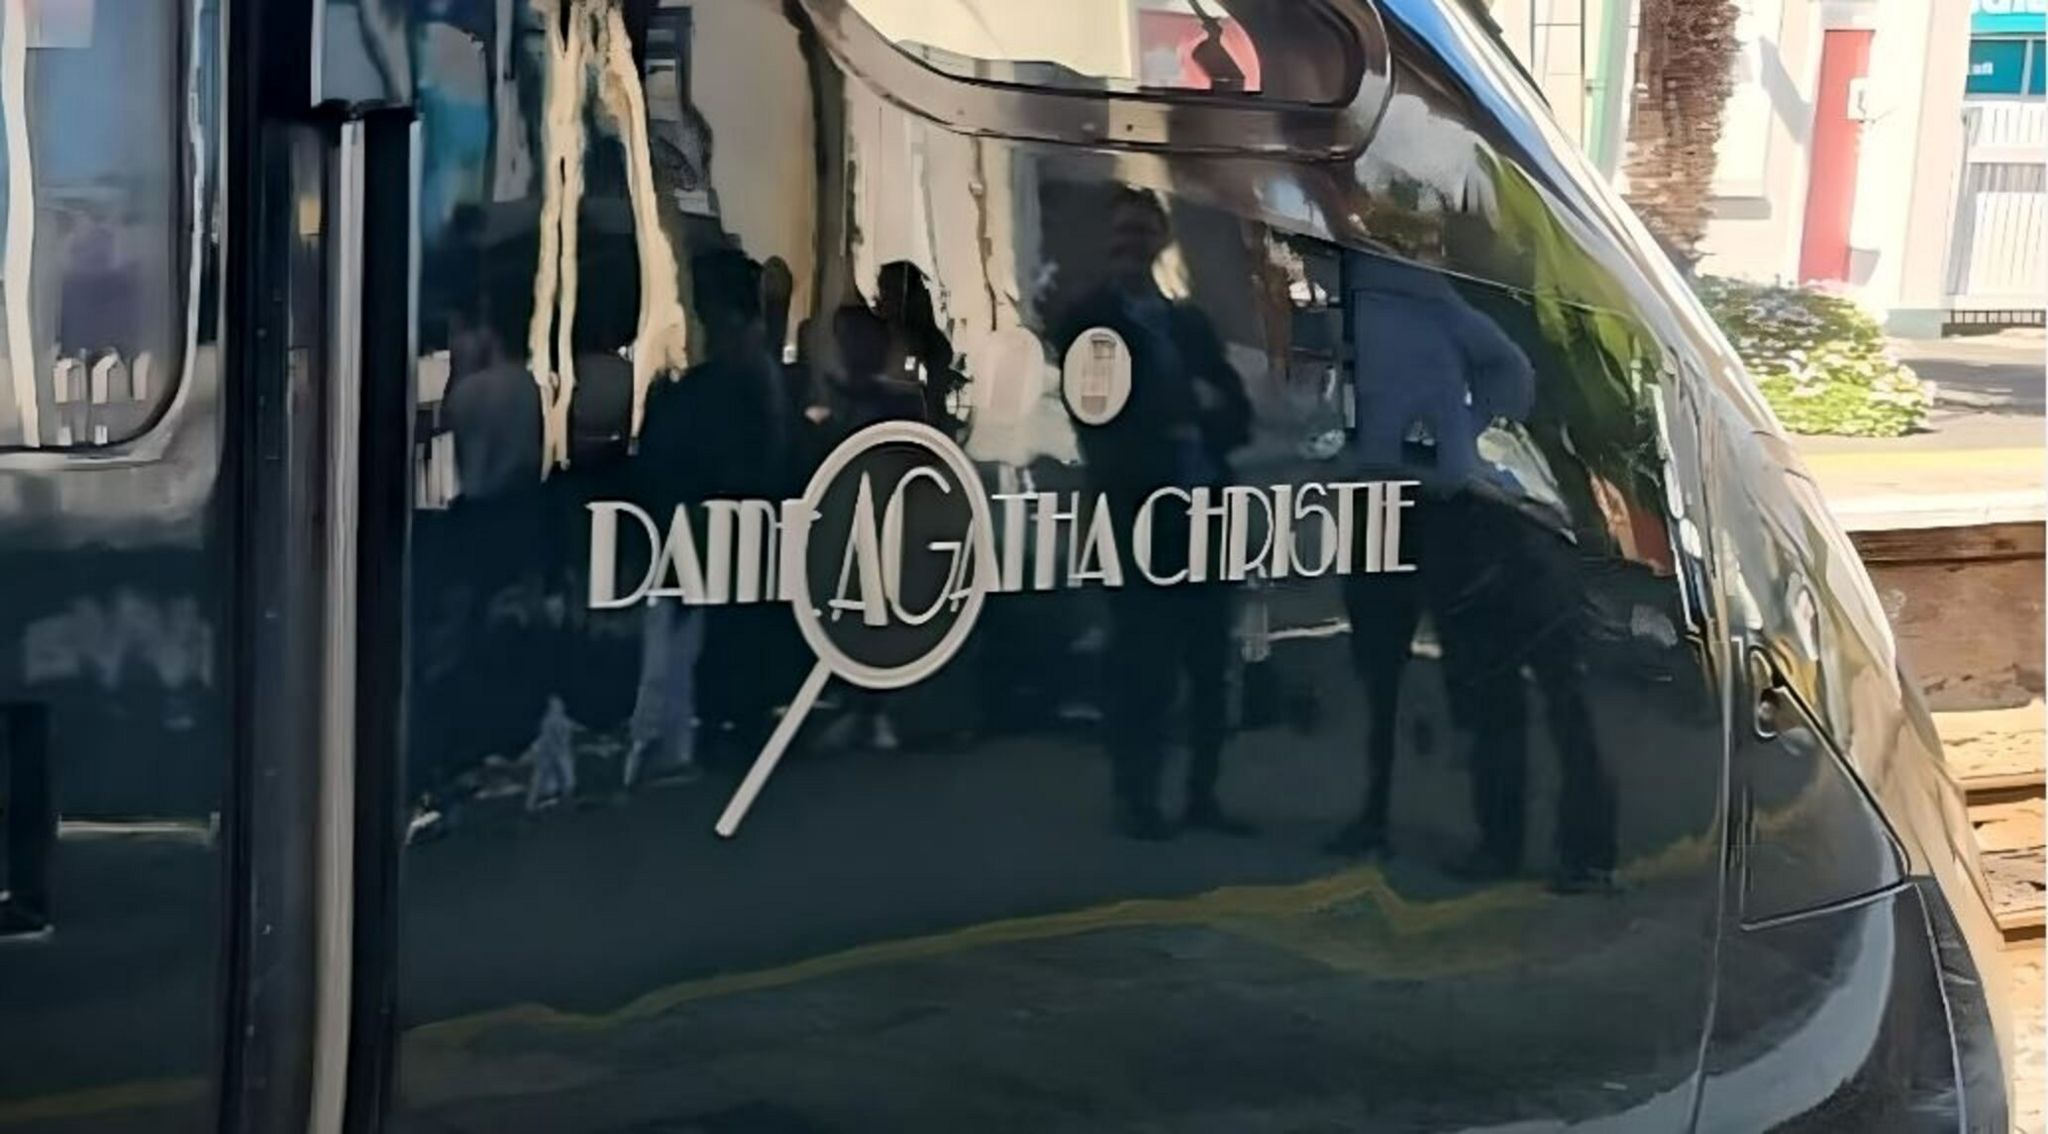 Dame Agatha Christie train name